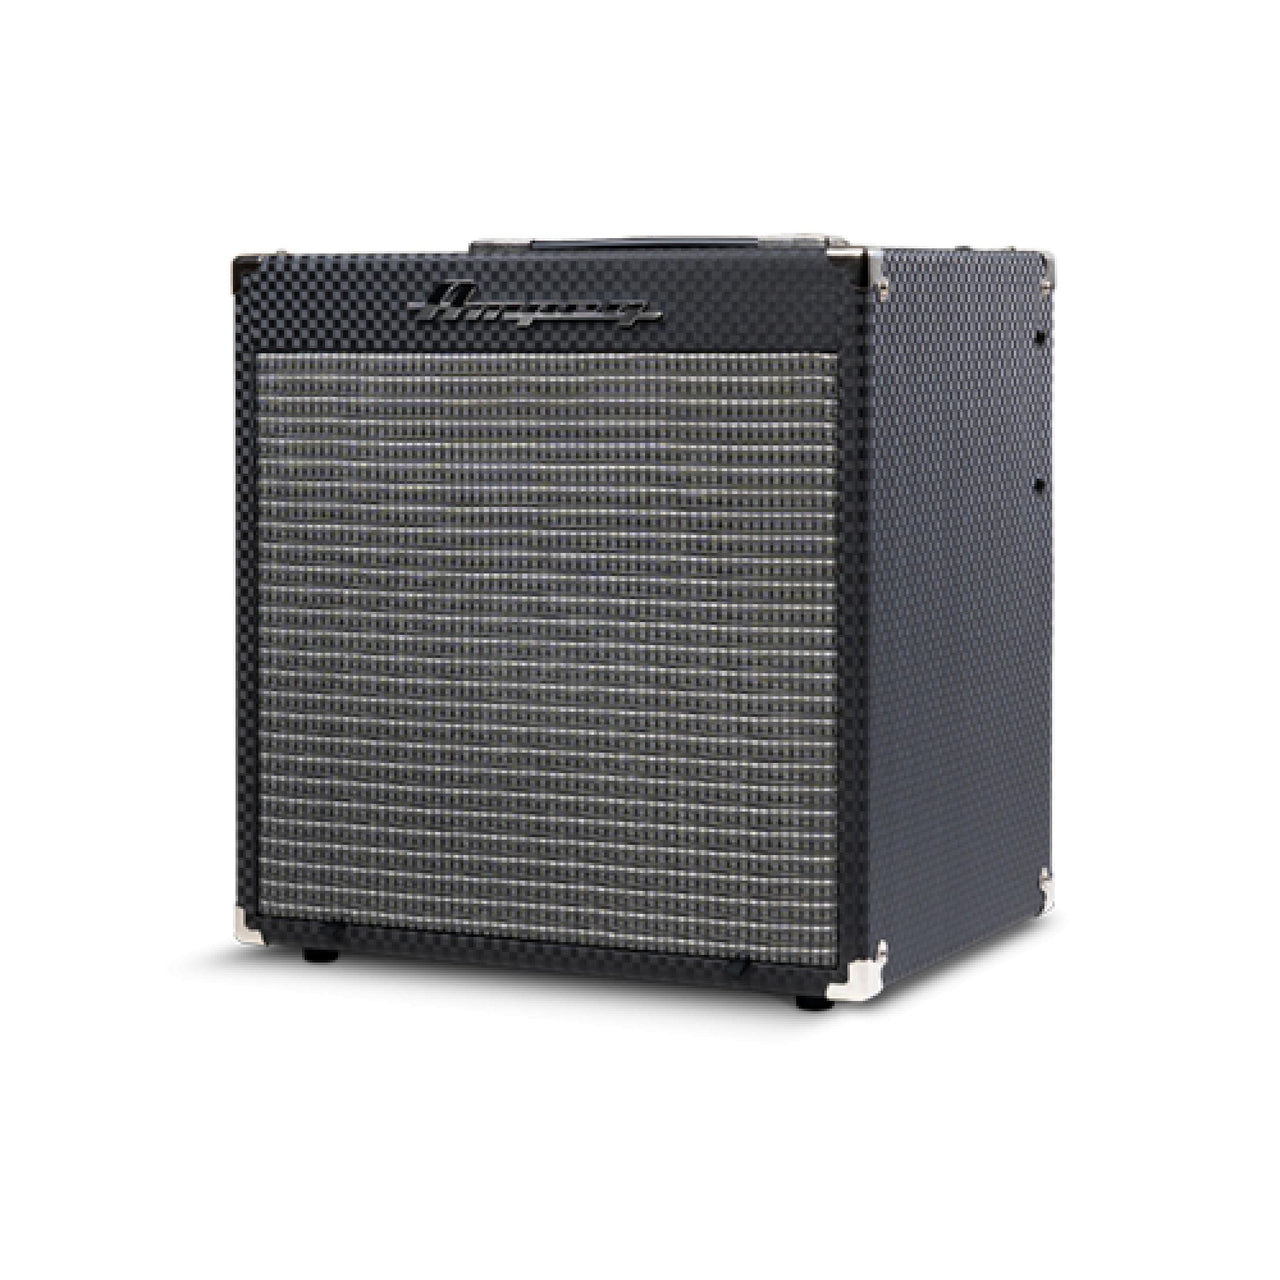 Amplificador Ampeg Para Bajo Electrico 30w Rb-108 – Musicales Doris